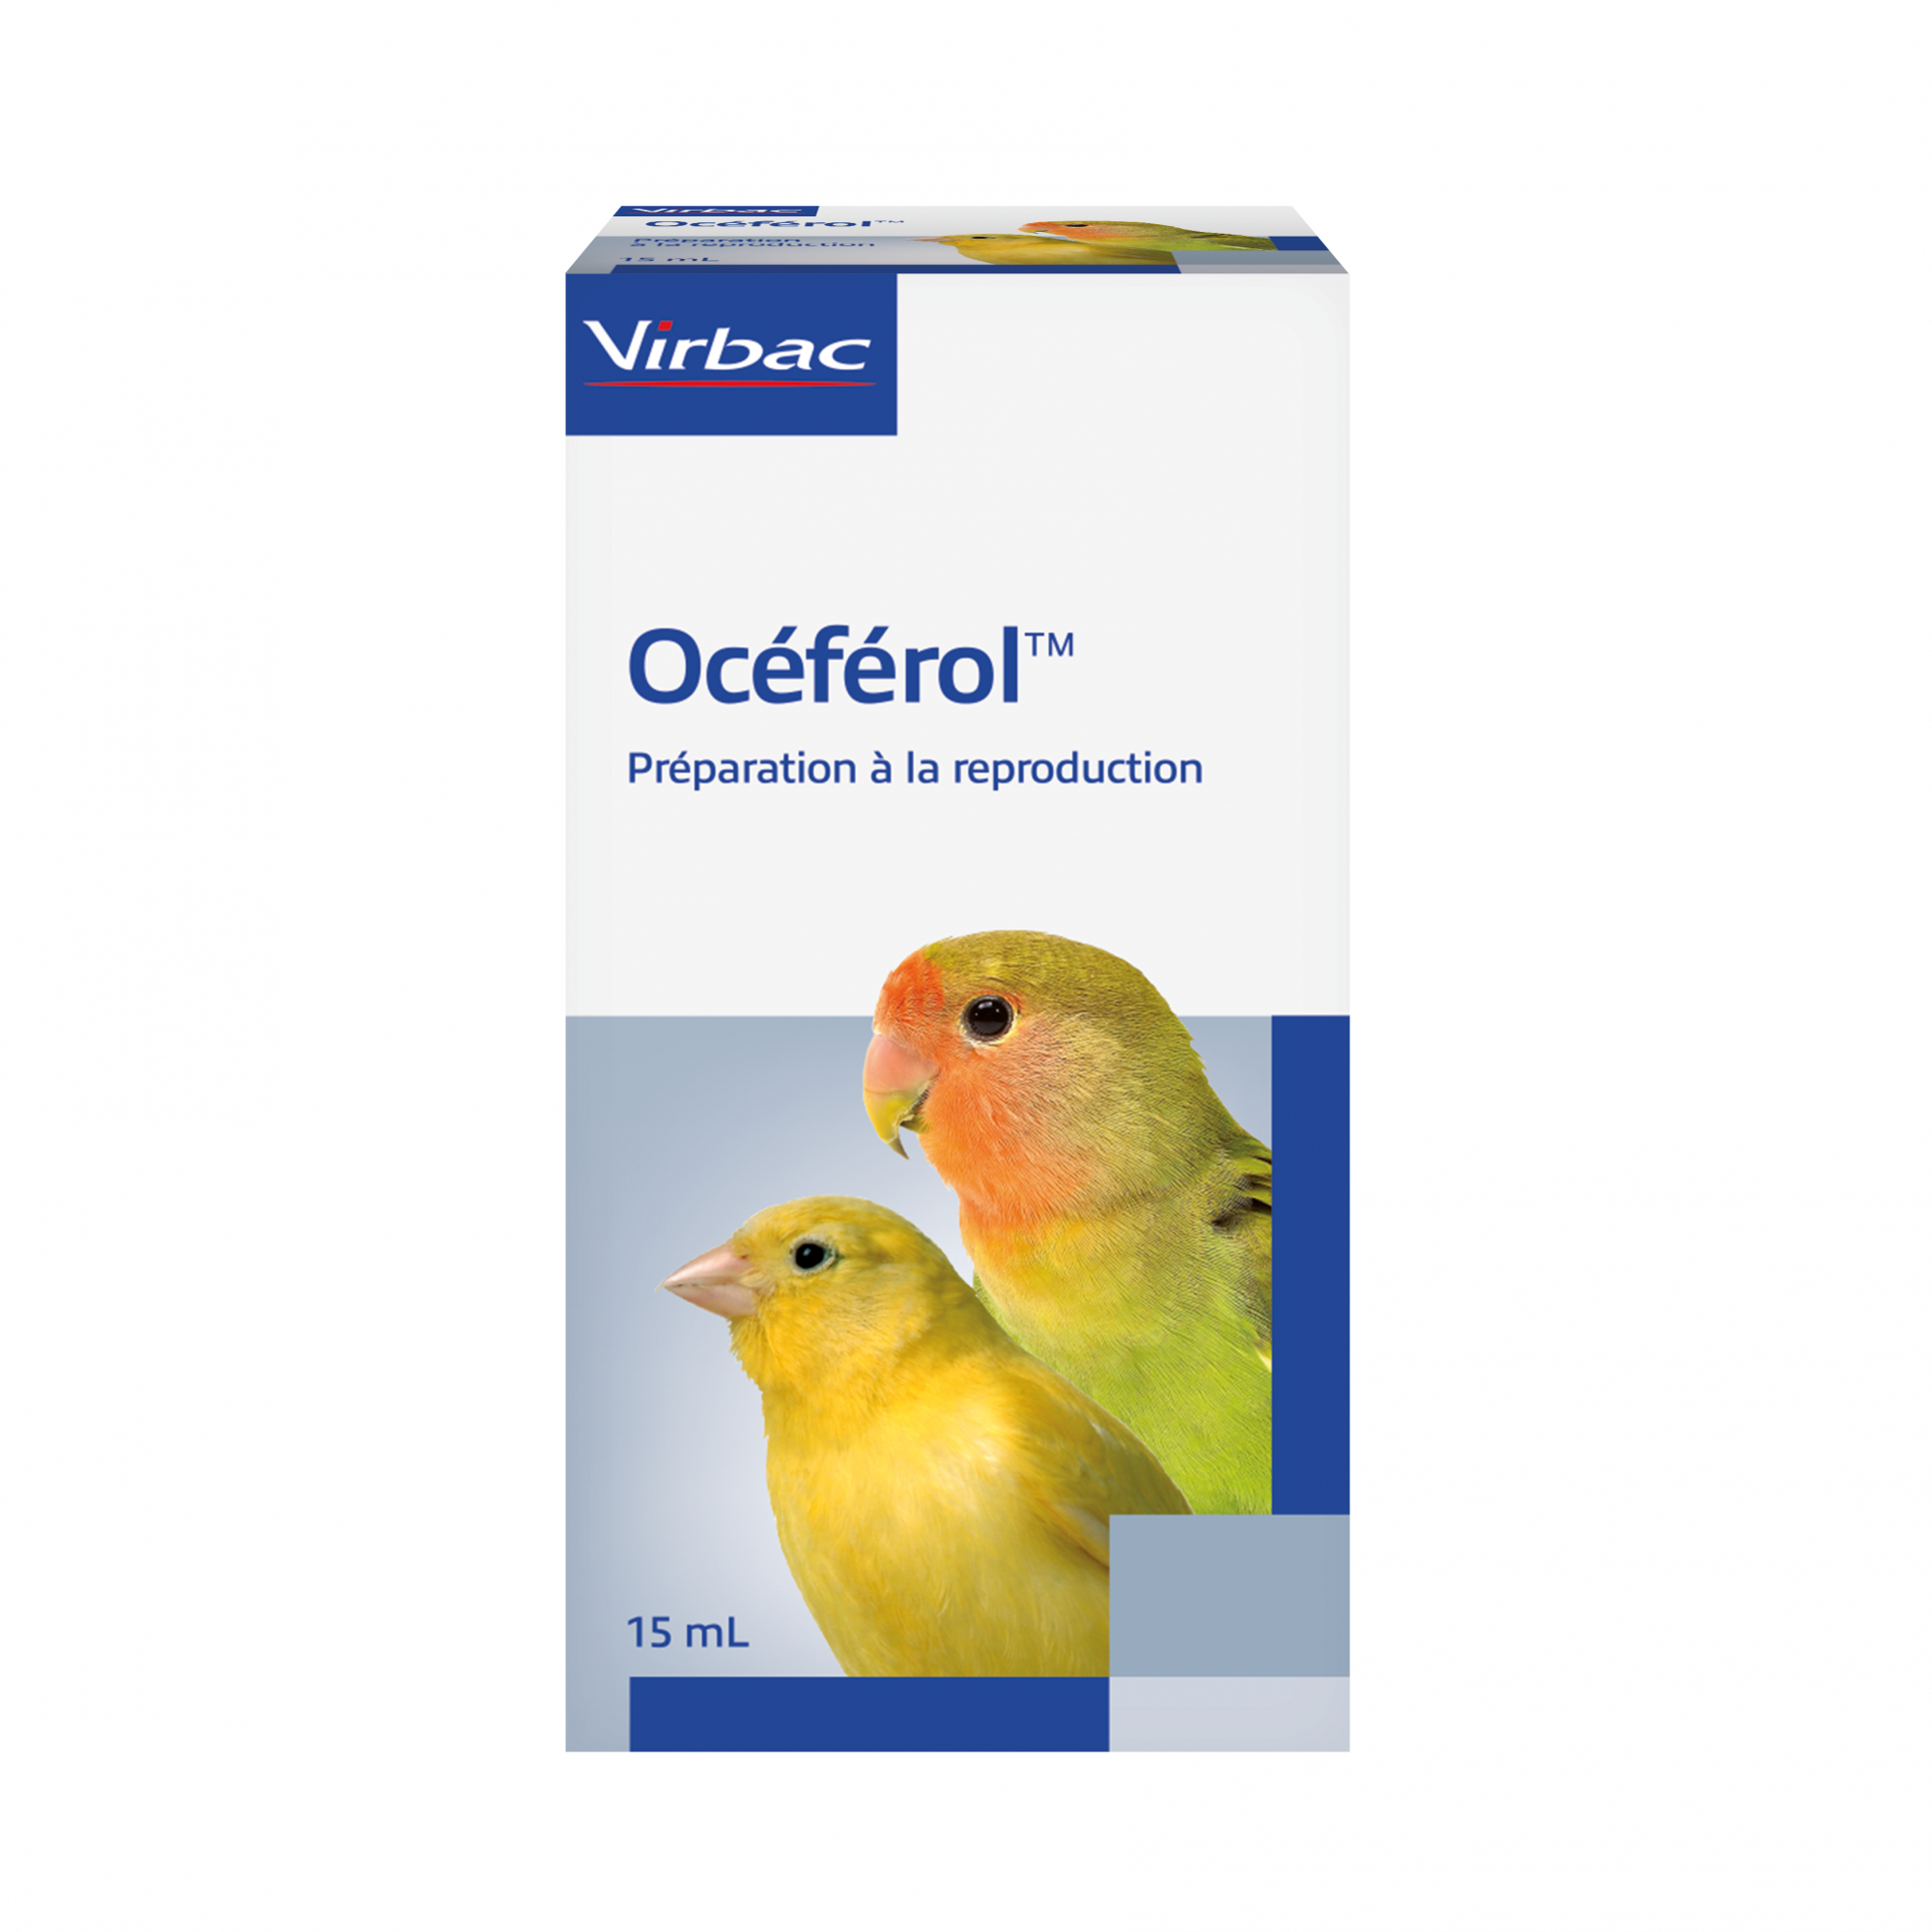 Virbac Oceferol Vitamine E pour la reproduction des oiseaux